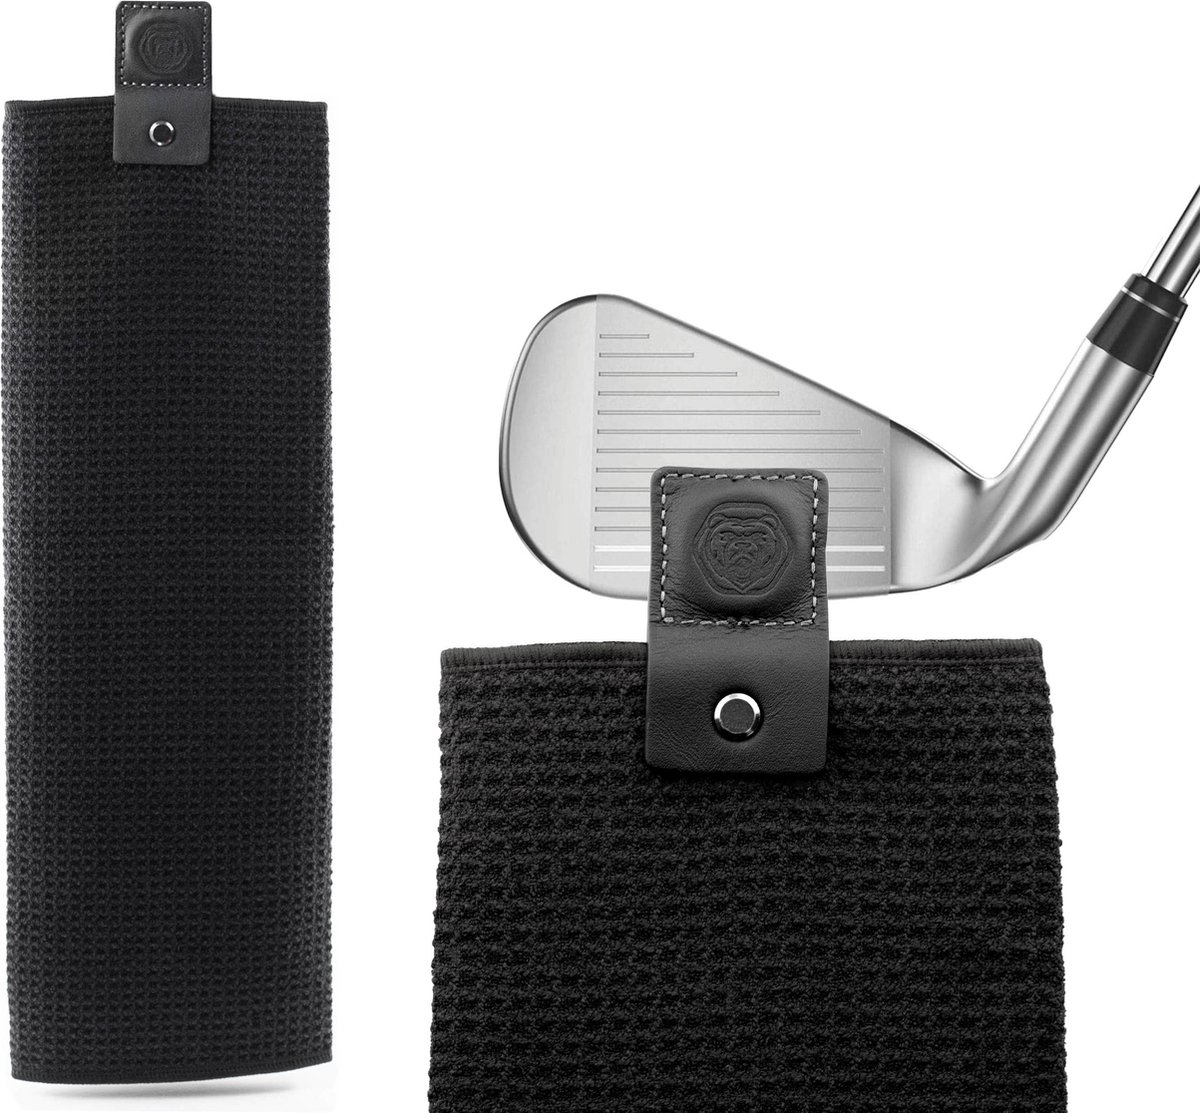 Brute Strength - Golf handdoek - 2 stuks - golfaccessoires - fitness handdoek - microvezel- sport handdoek - Industriële sterke magneet voor veilige grip op golfkarren of -clubs